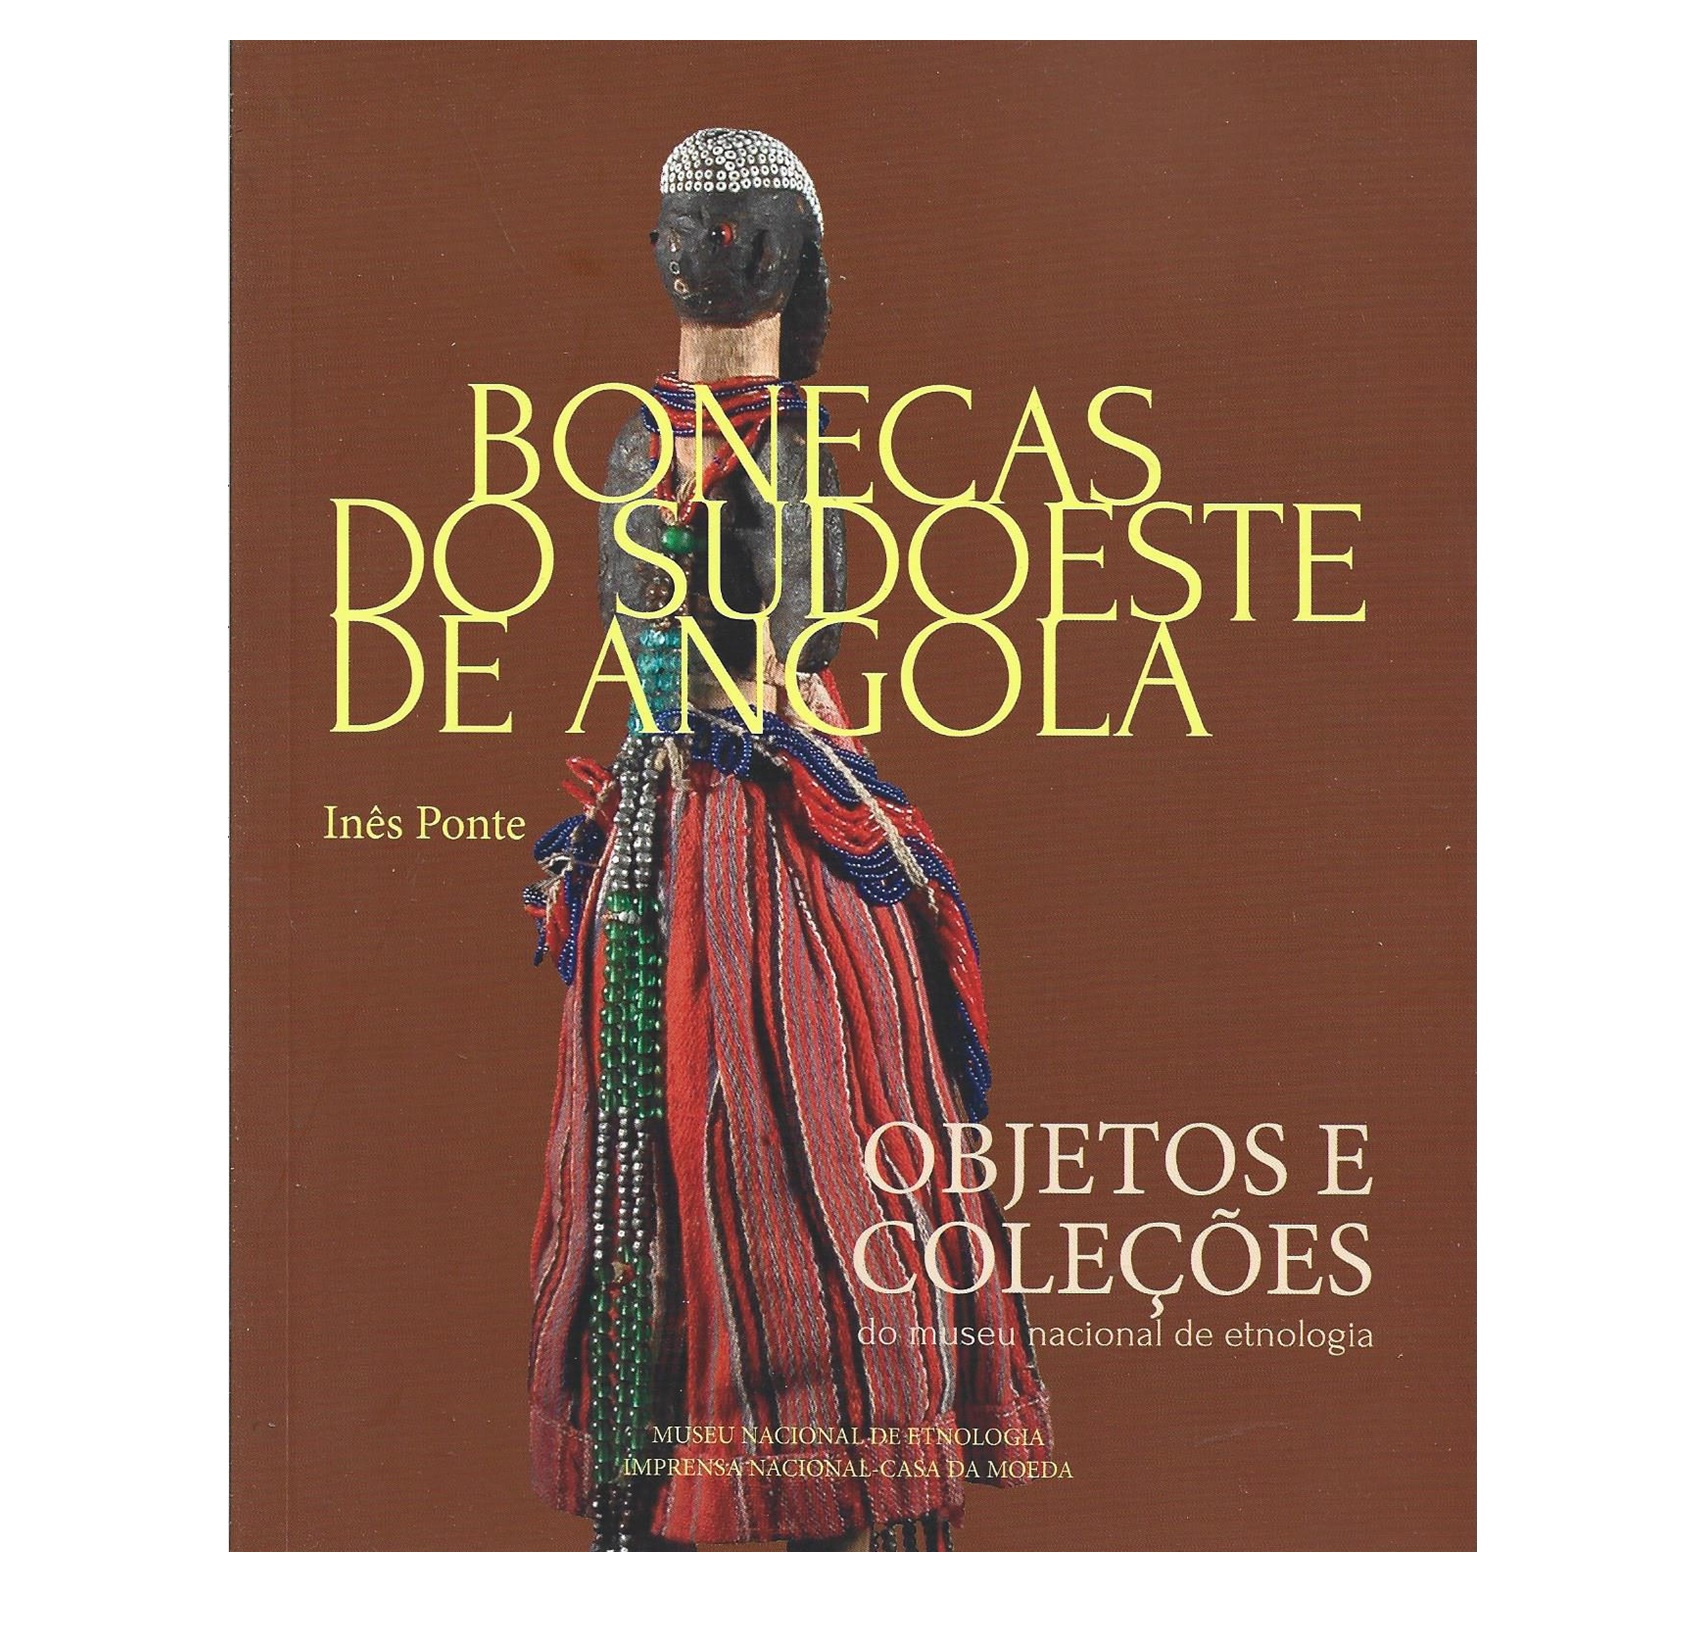 BONECAS DO SUDOESTE DE ANGOLA